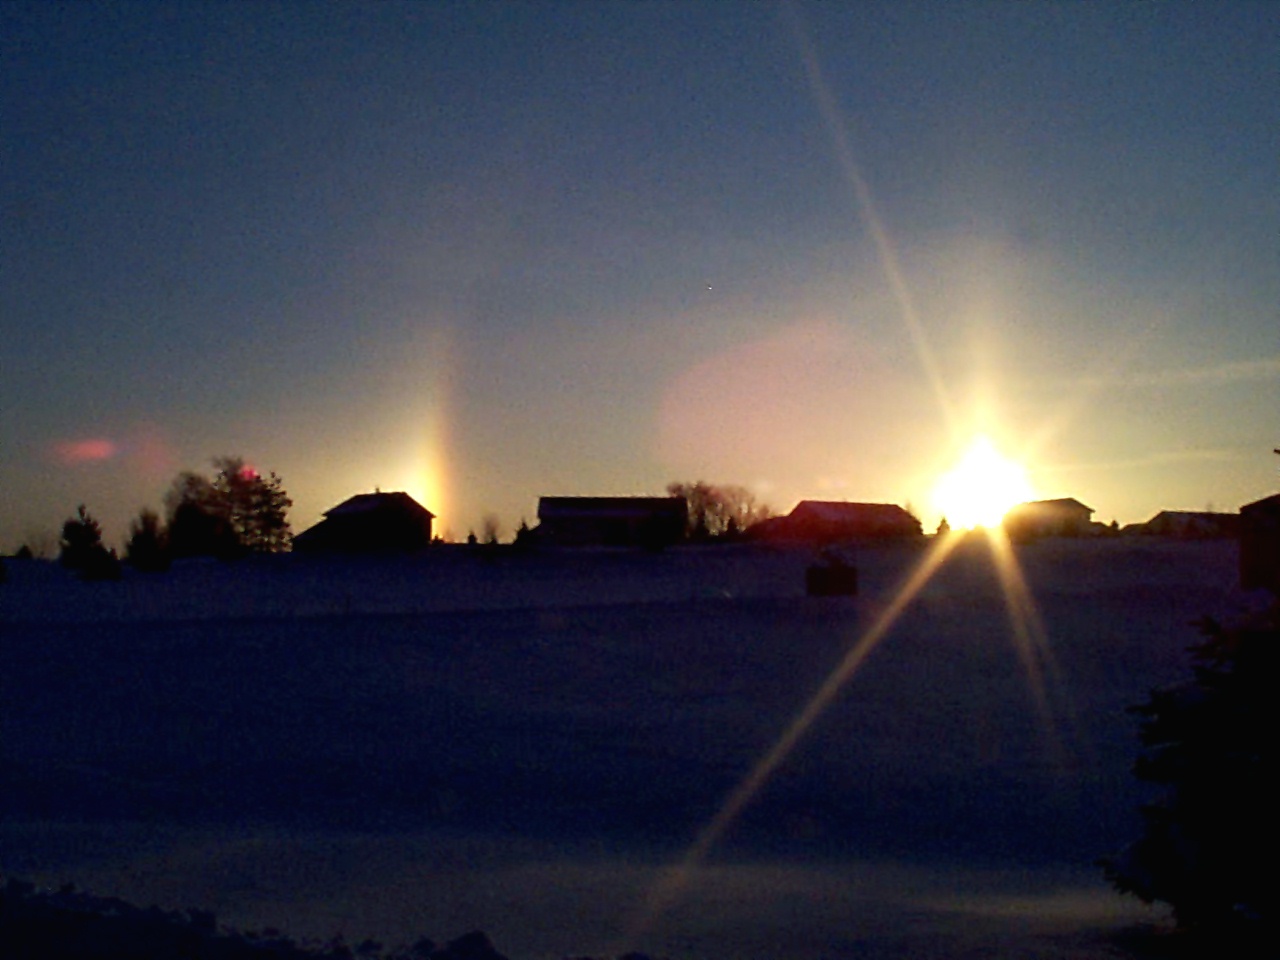 Winter solstice in Chanhassen, Minnesota - Left view